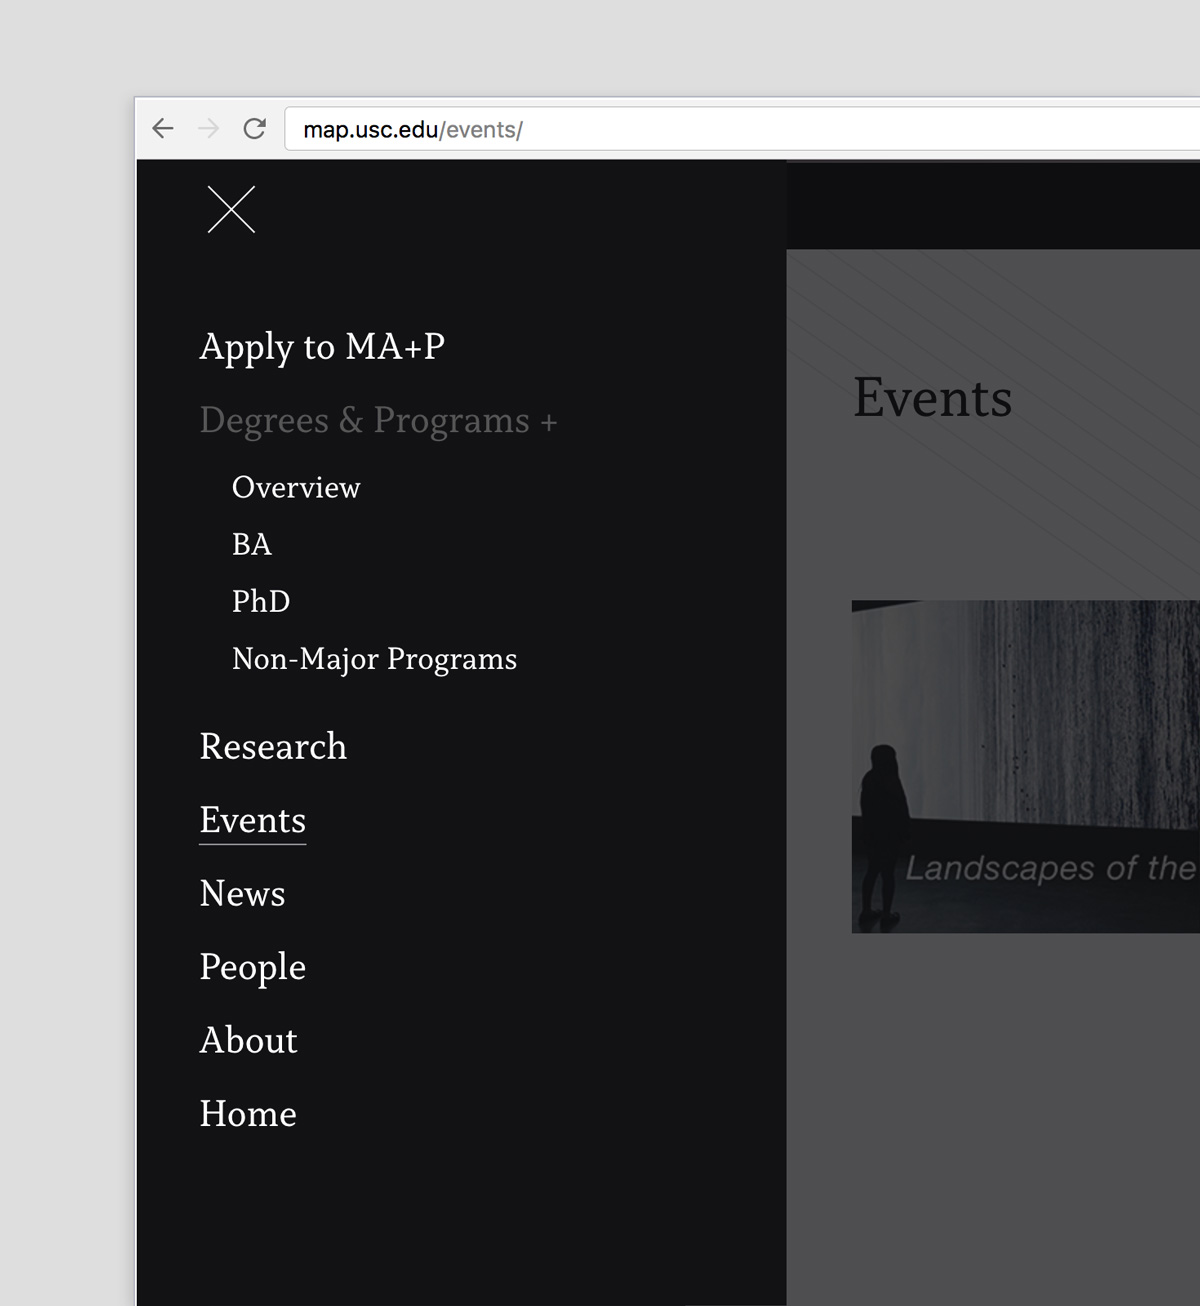 MA+P site menu navigation